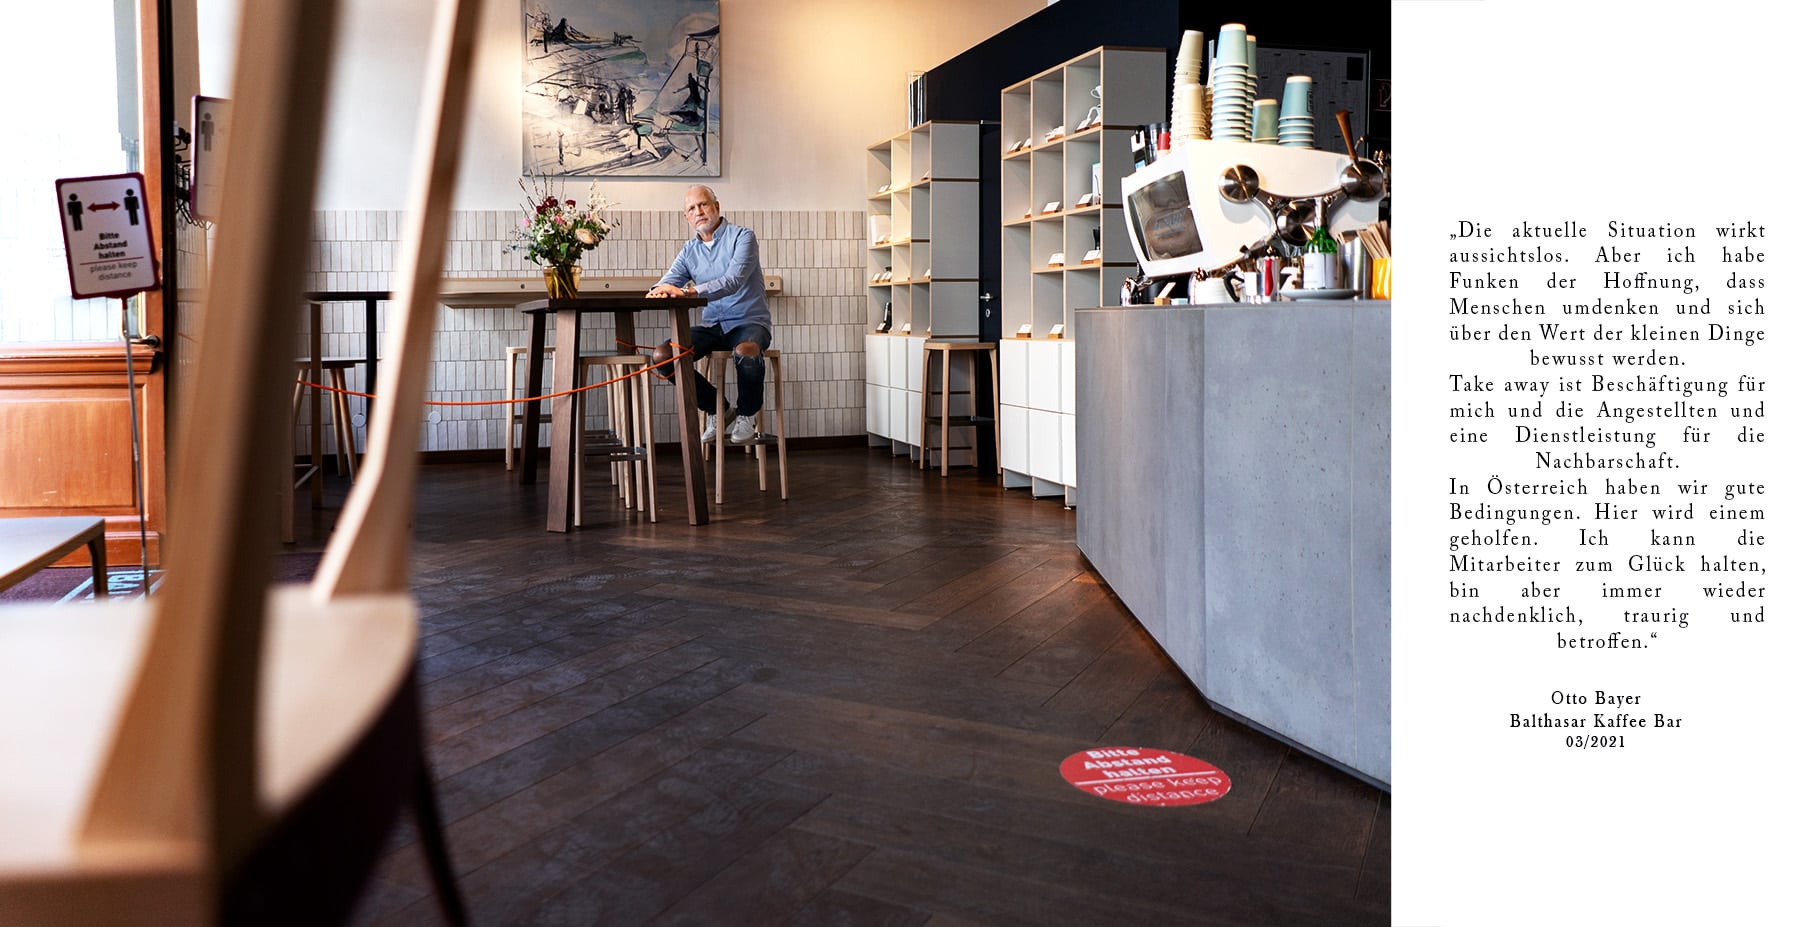 Otto Bayer | Balthasar Kaffee Bar